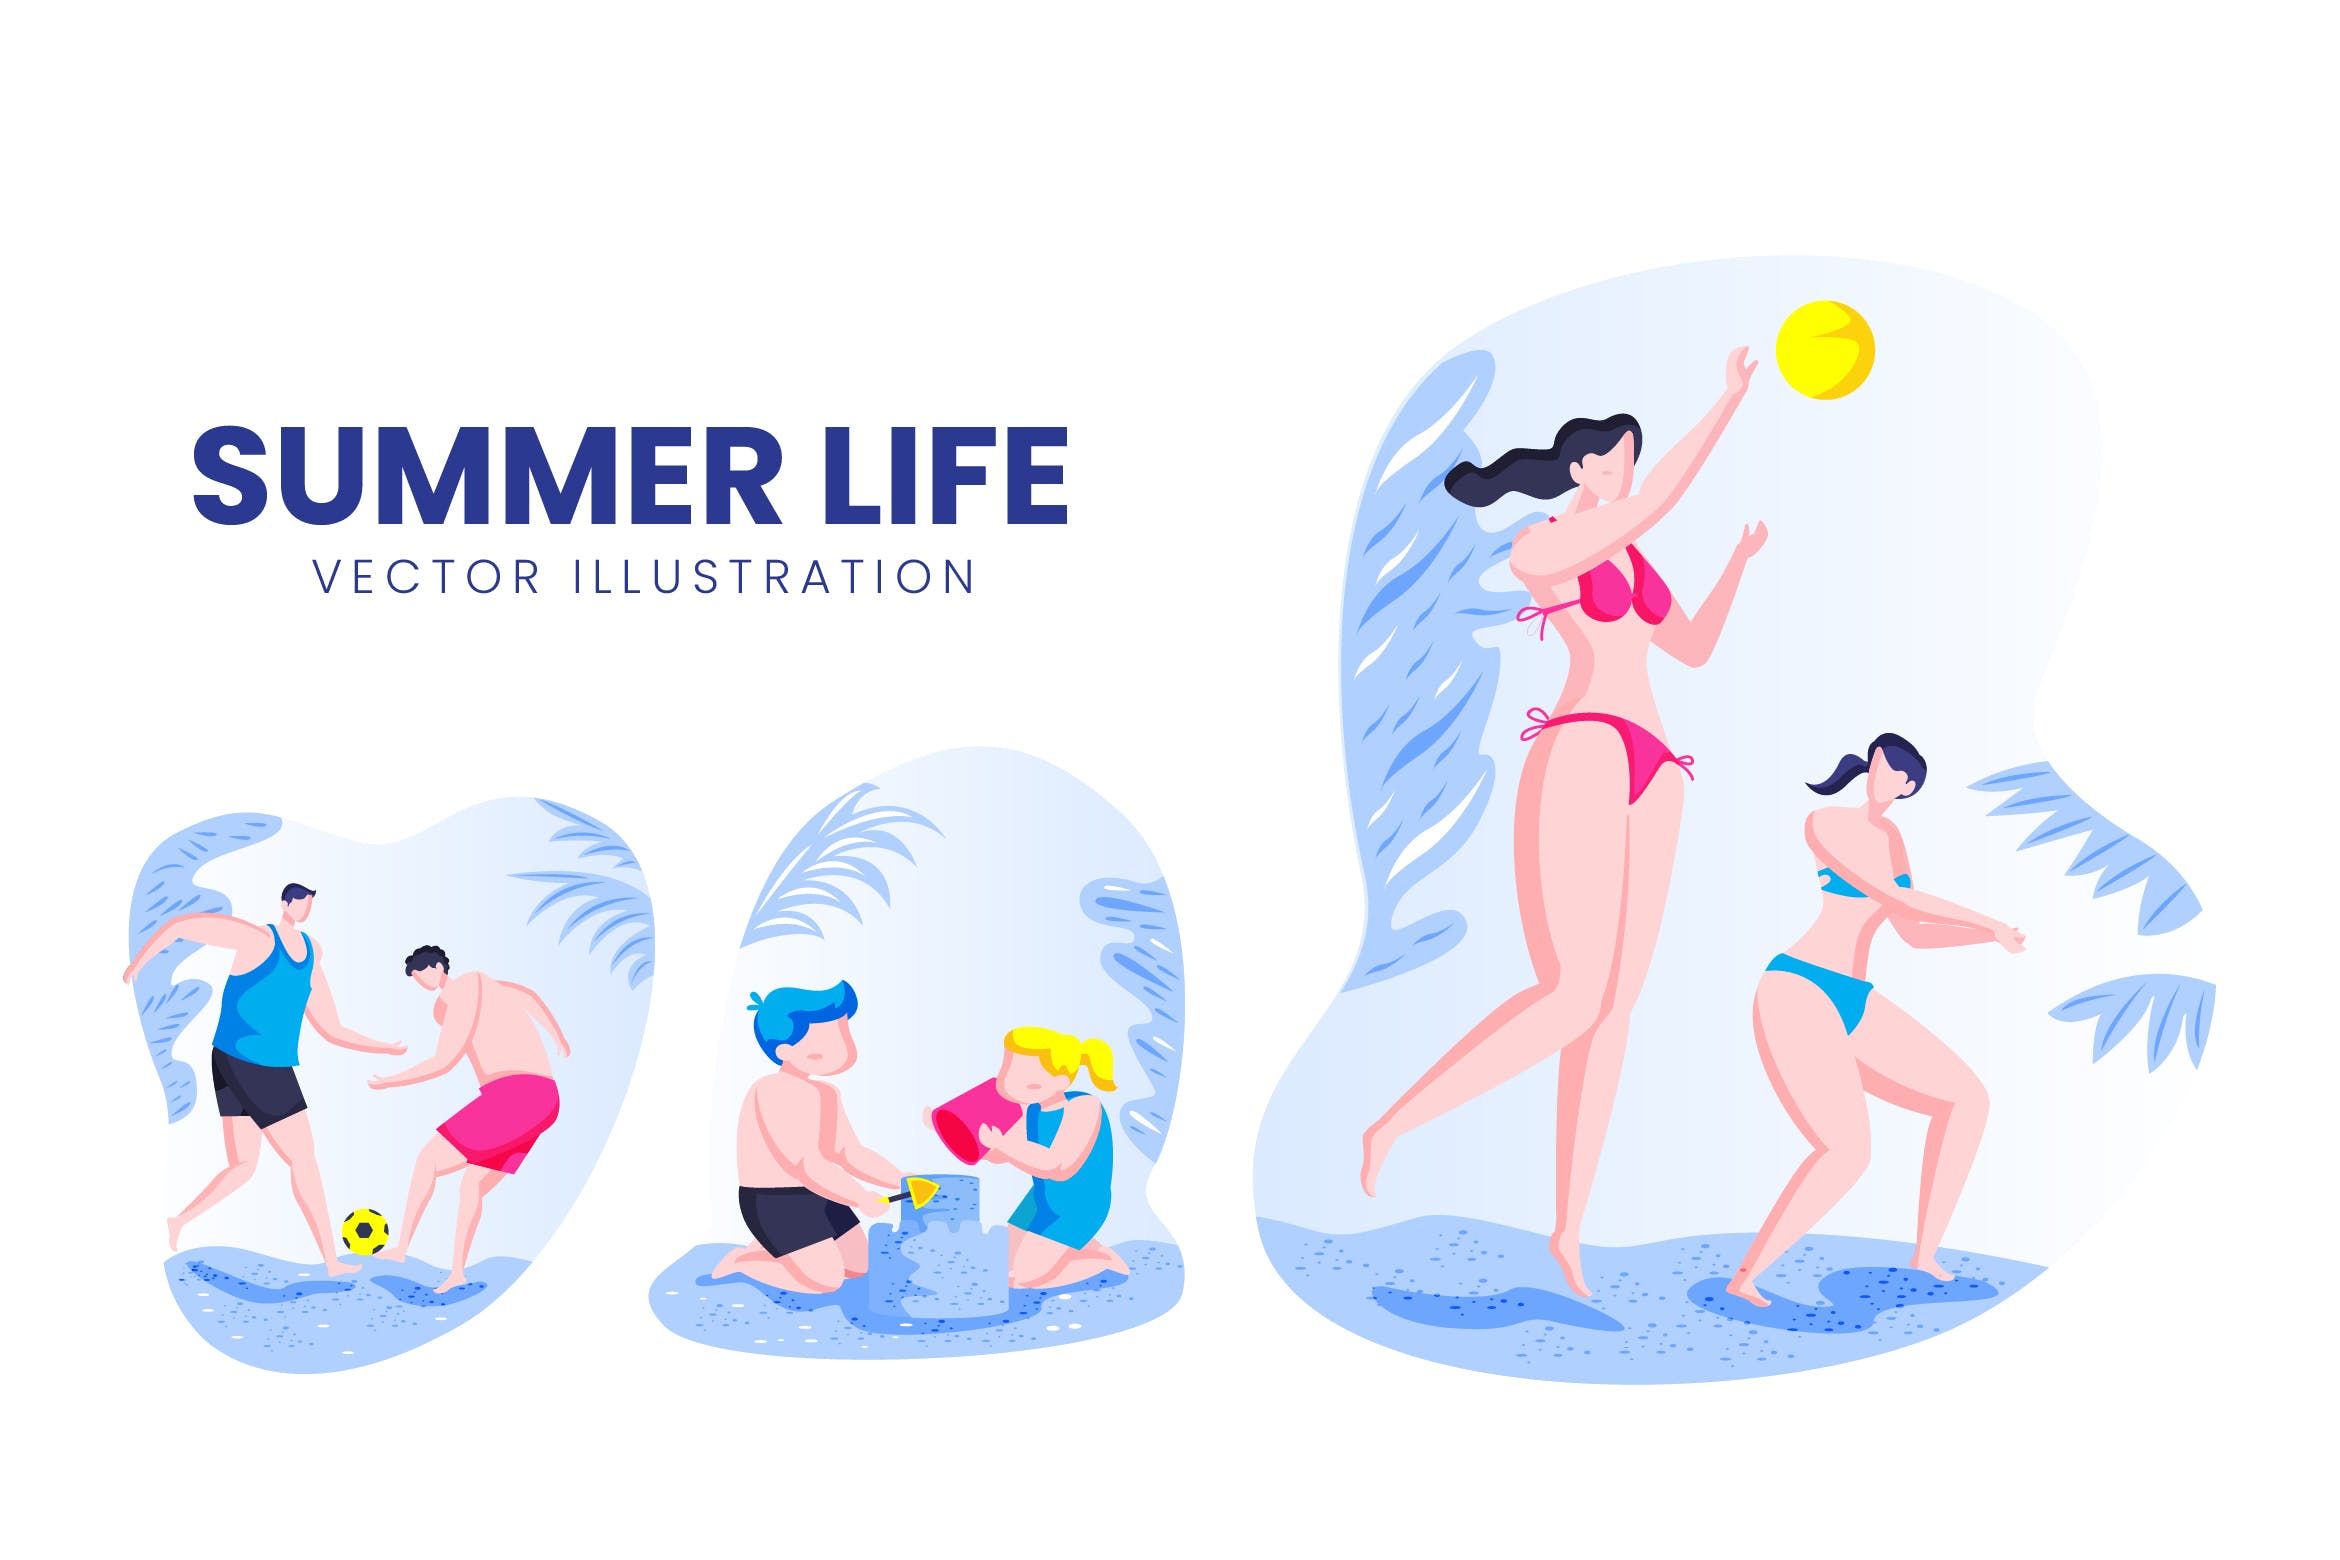 夏季生活人物形象非凡图库精选手绘插画矢量素材 Summer Life Activity Vector Character Set插图